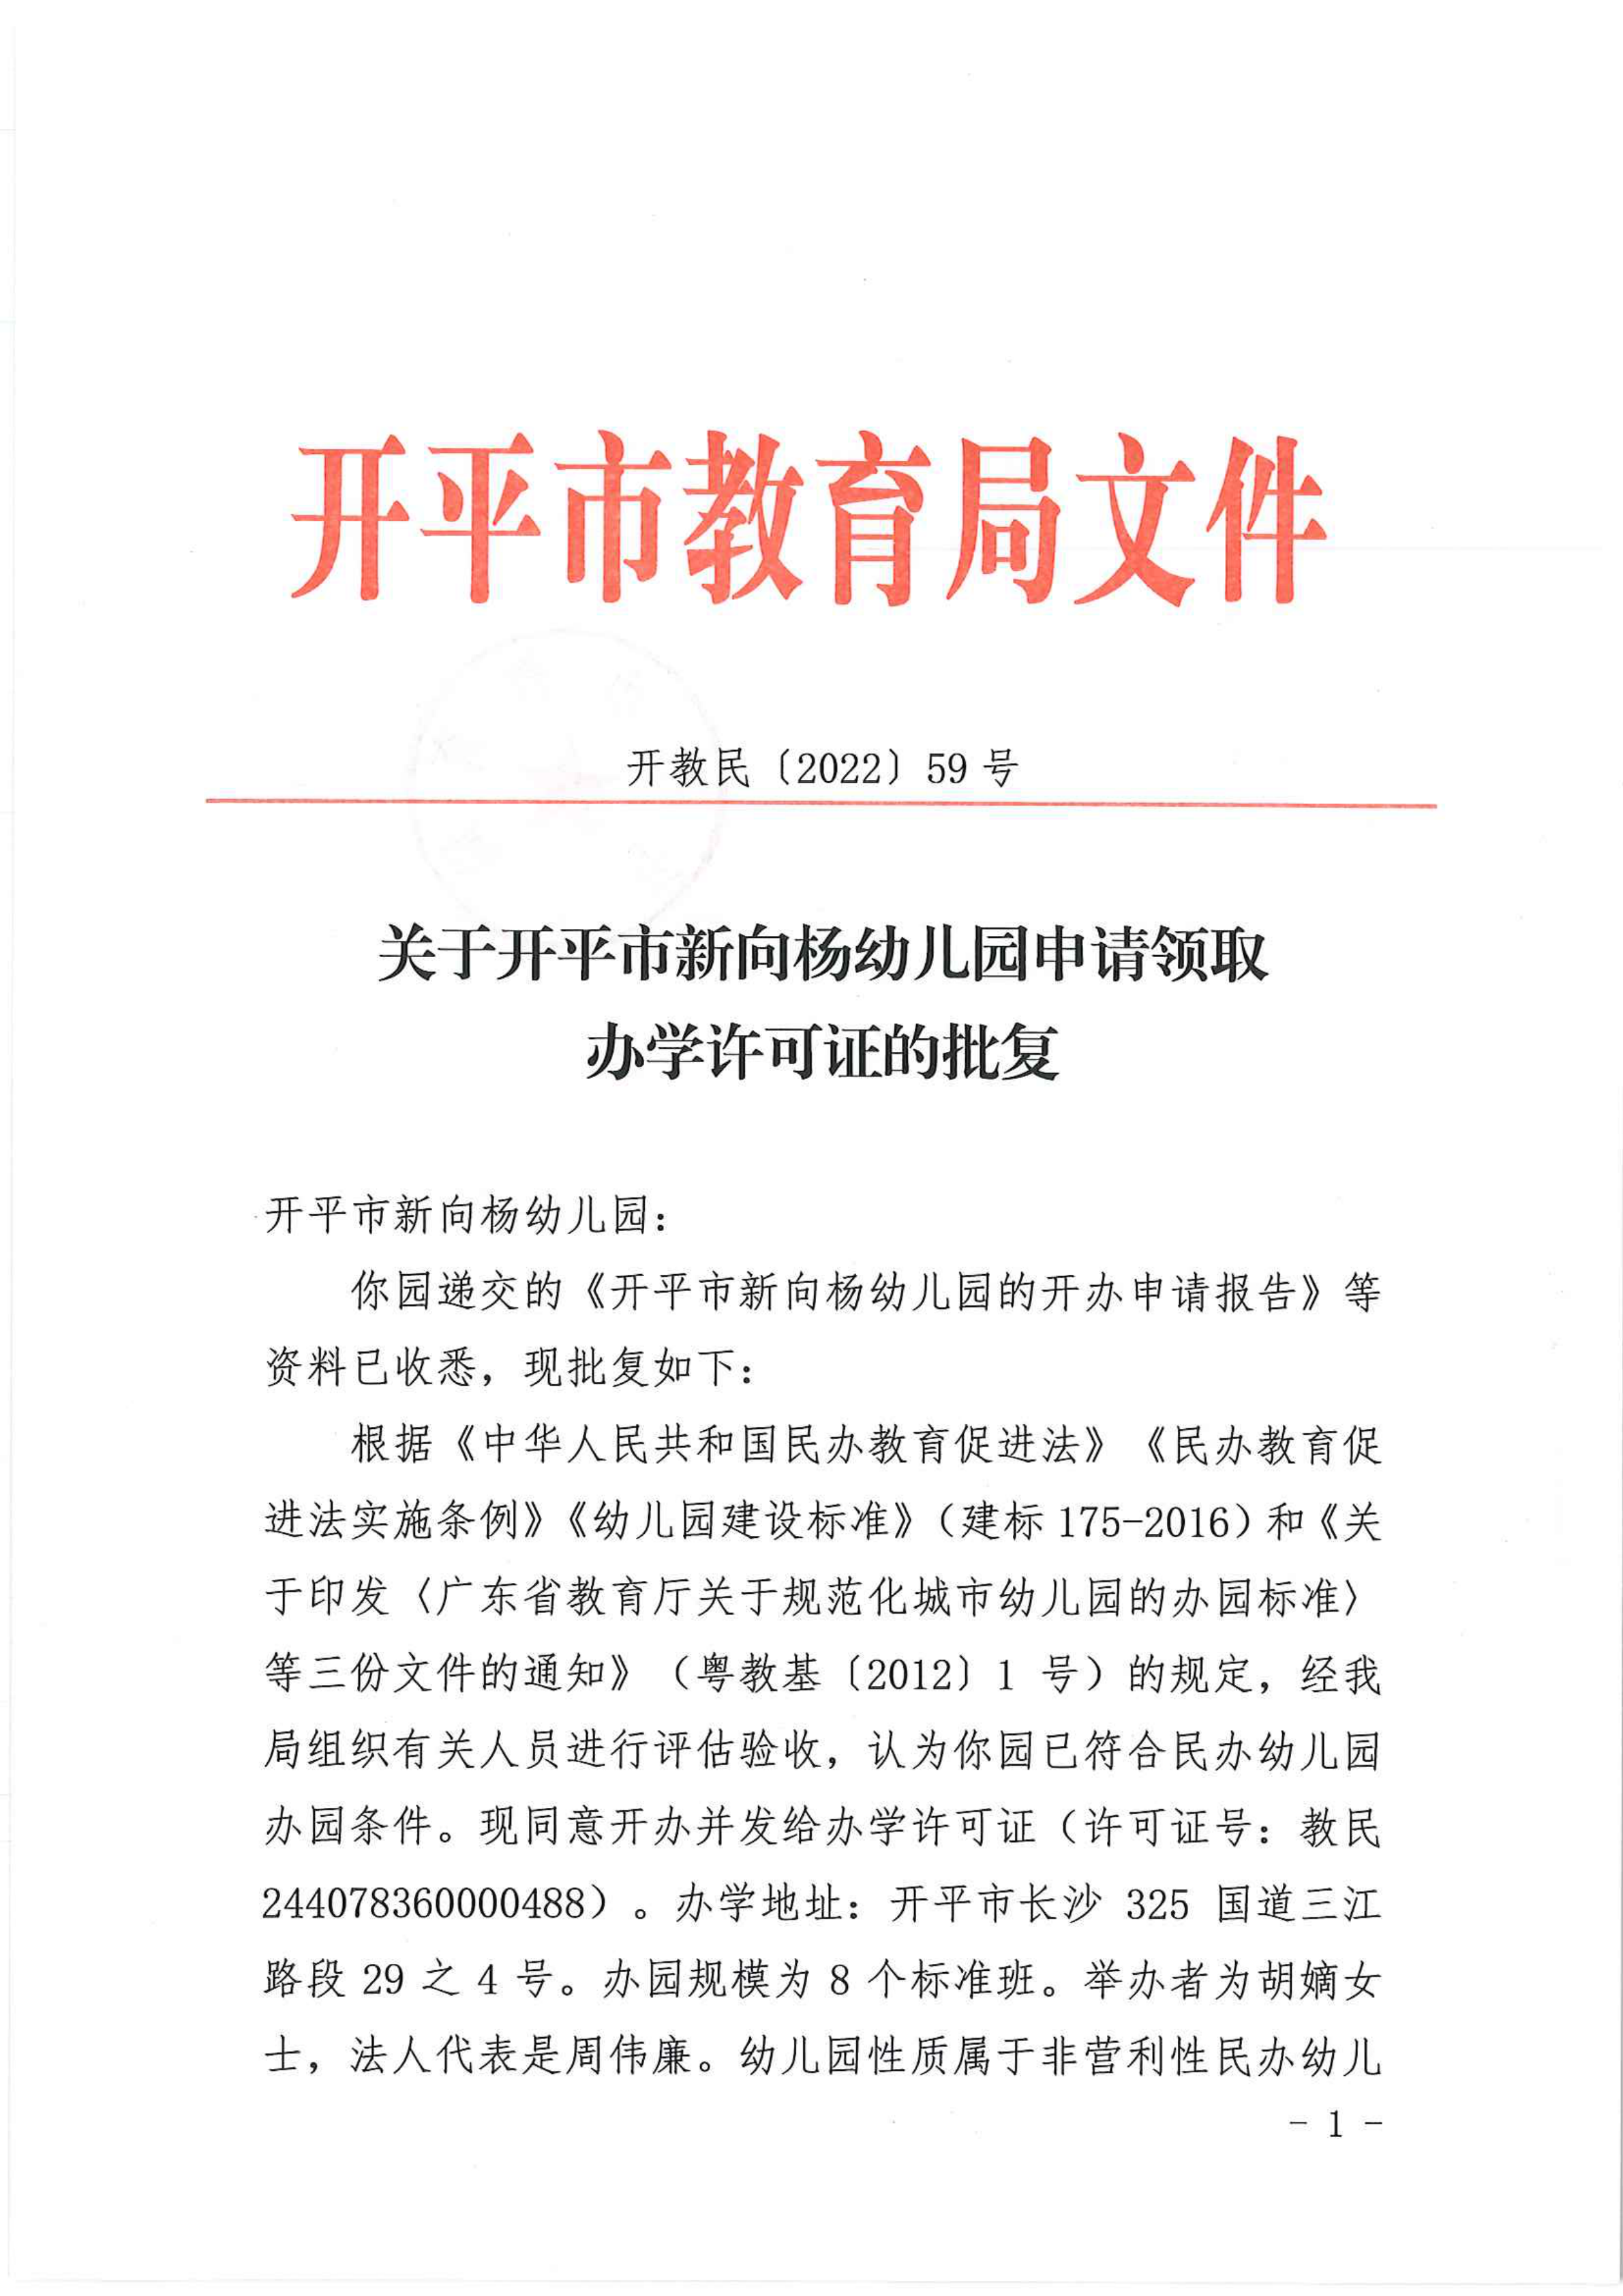 开教民〔2022〕59号关于开平市新向杨幼儿园申请领取办学许可证的批复_00.png